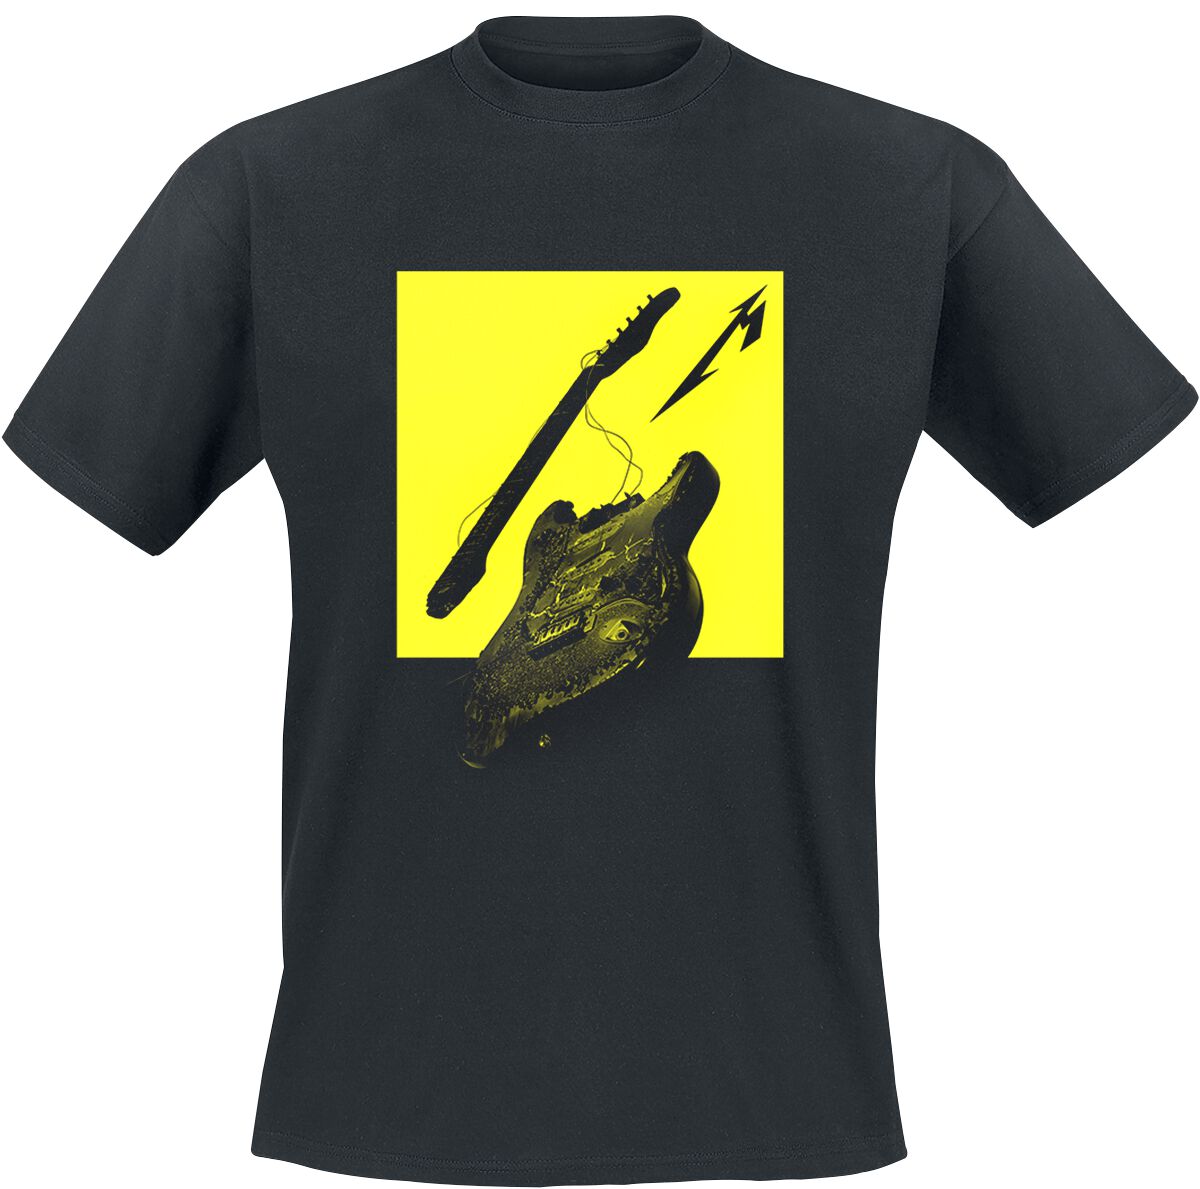 Metallica T-Shirt - Broken/Burnt Guitar (M72) - S bis XL - für Männer - Größe S - schwarz  - Lizenziertes Merchandise!